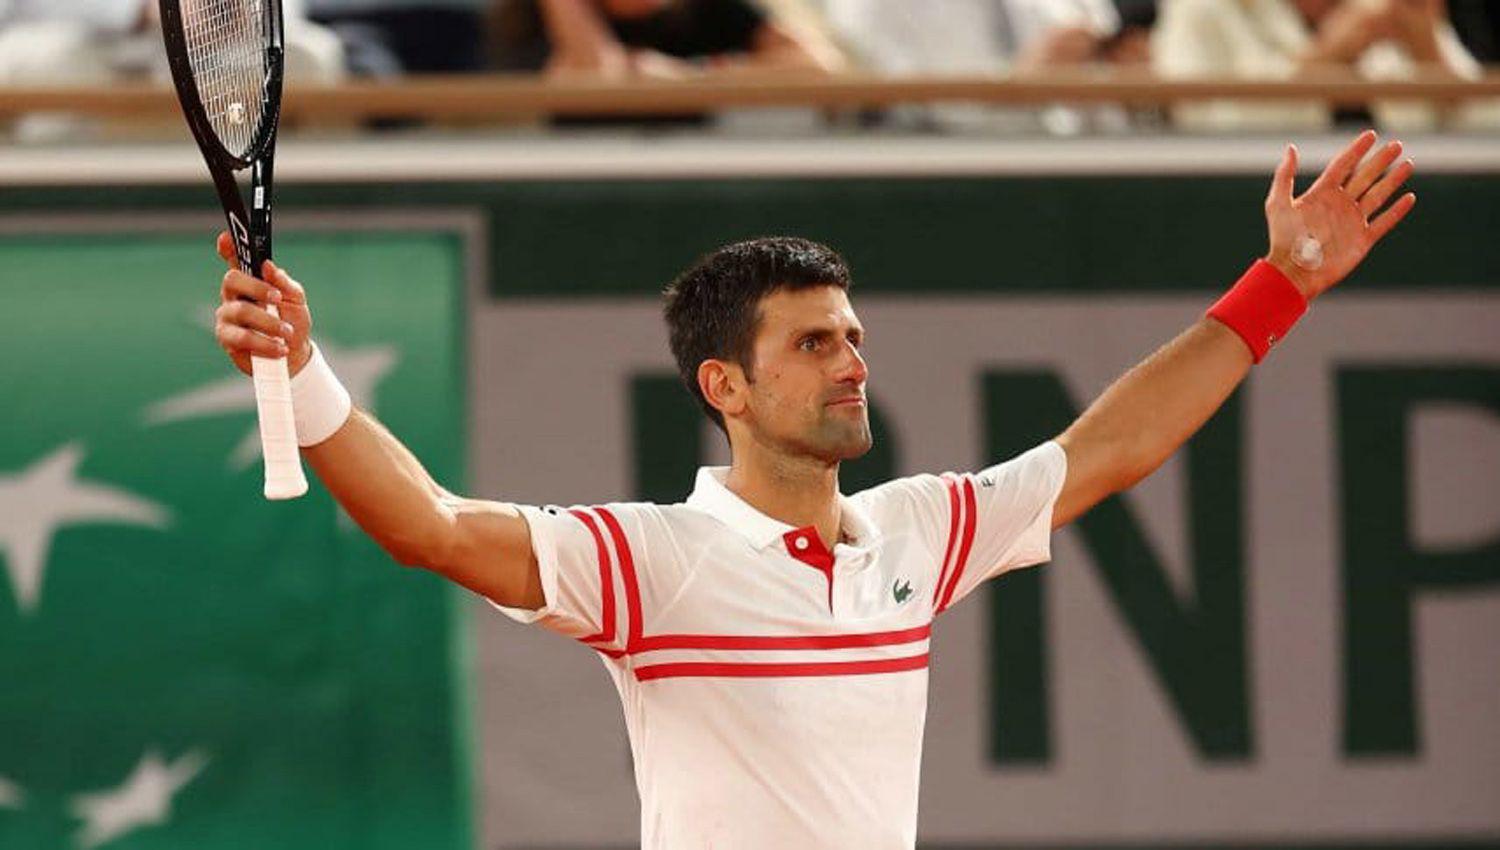 Cayoacute el Rey de Roland Garros- Novak Djokovic vencioacute a Rafael Nadal